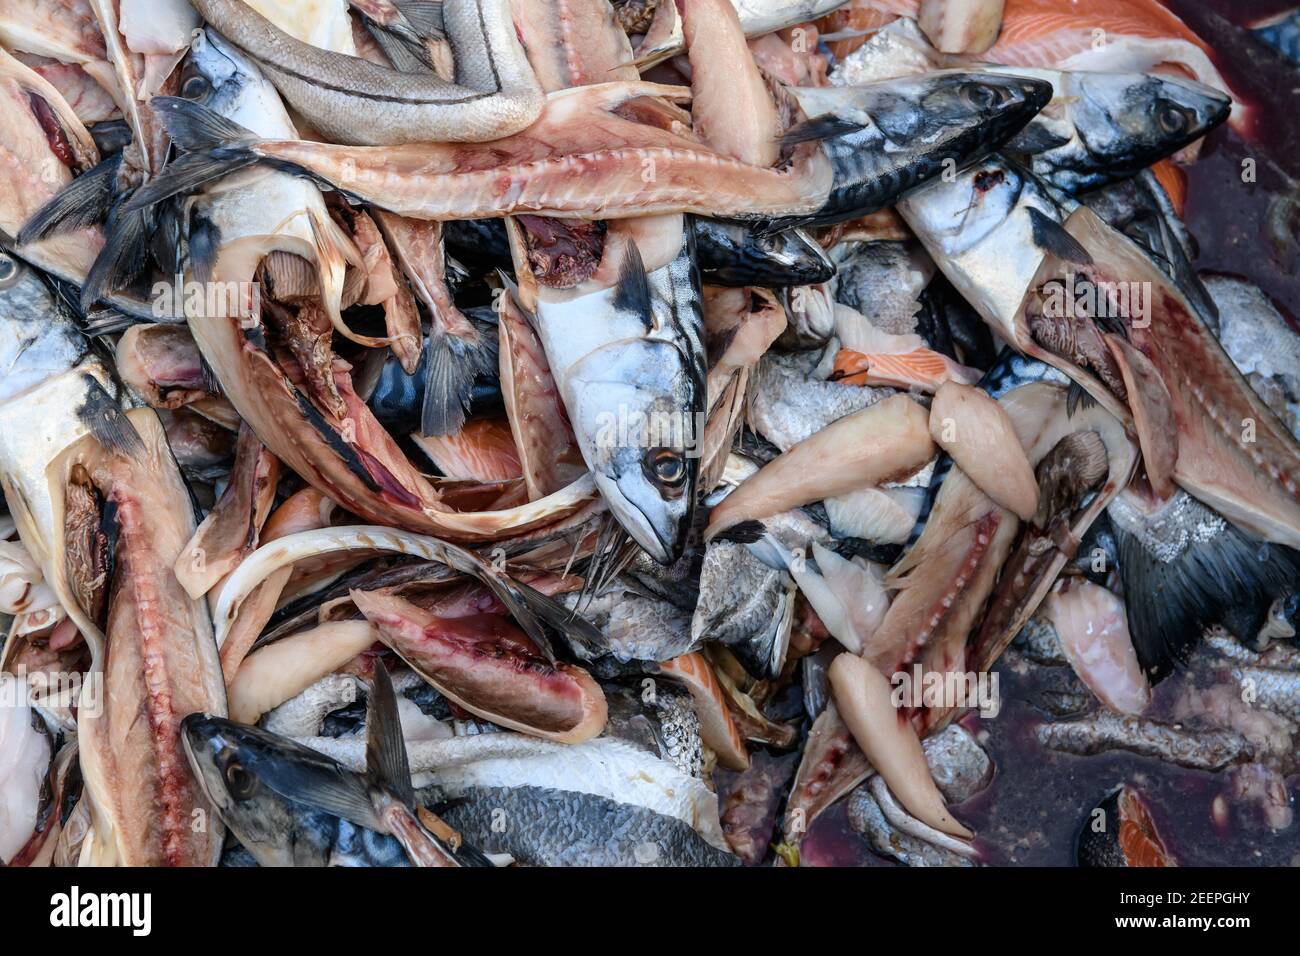 Desechos de alimentos, cabezas de pescado y guetas de pescado en un contenedor de desechos de alimentos en el Birmingham Wholesale Markert, Birmingham, Inglaterra, Reino Unido Foto de stock